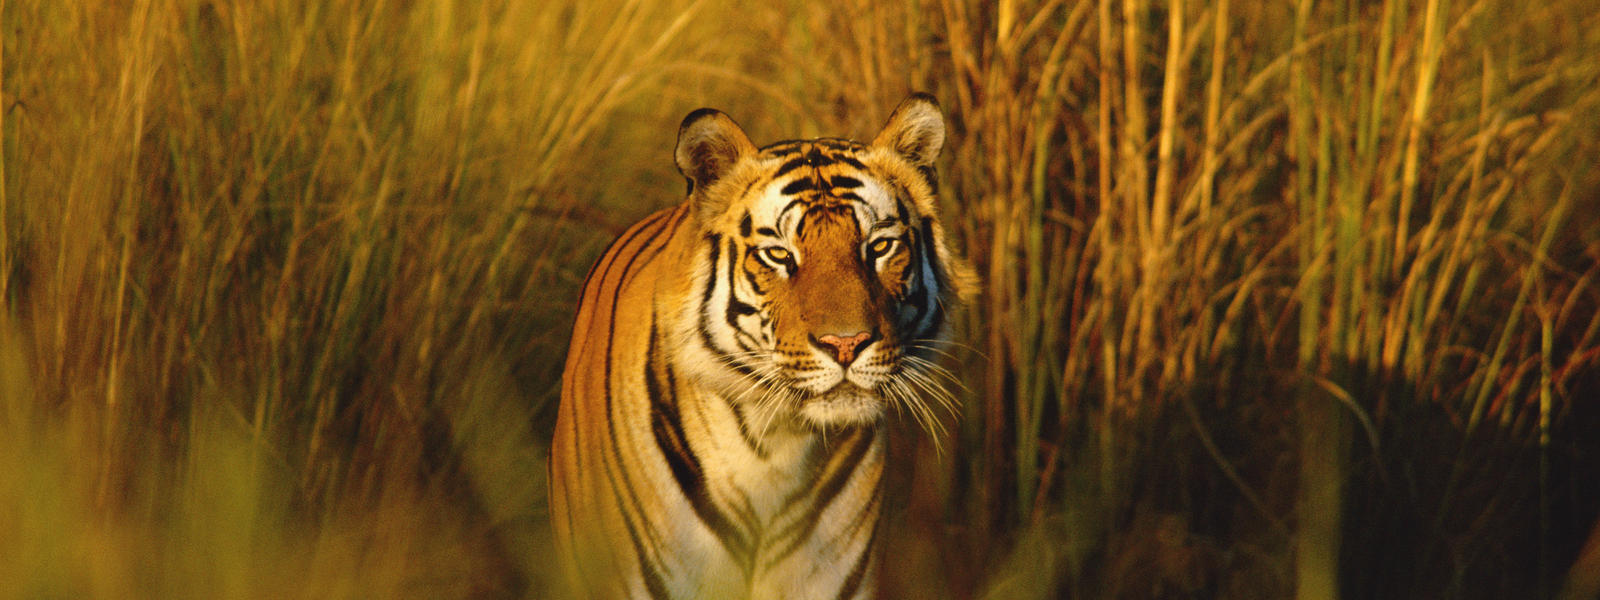 Sakkarbag Zoo gets pair of Tigers in exchange of Lions